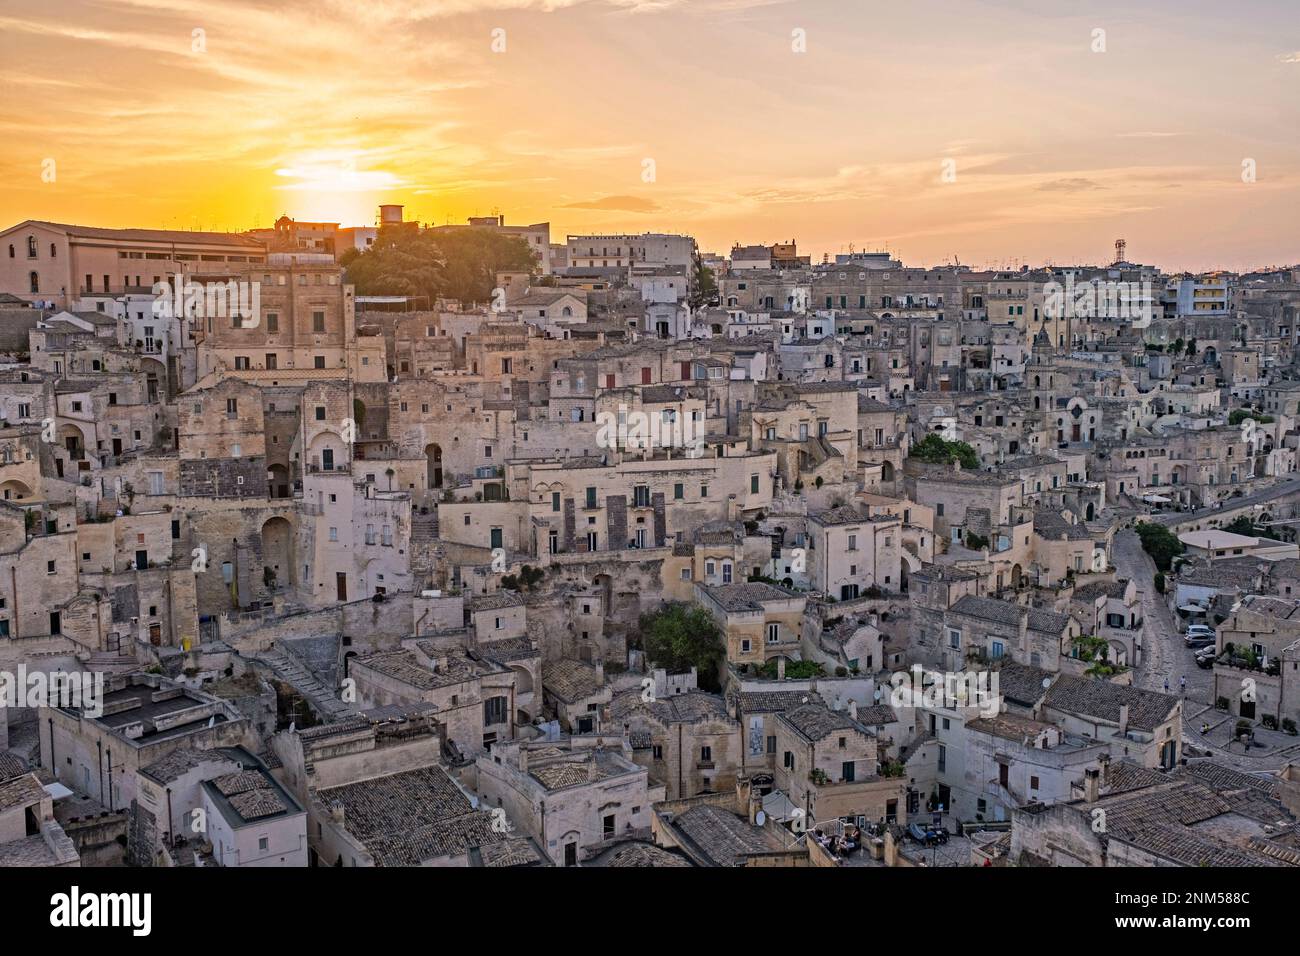 Vista sul complesso dei Sassi di Matera, con le sue abitazioni rupestri al tramonto, nell'antica città di Matera, capitale della Basilicata, Italia meridionale Foto Stock